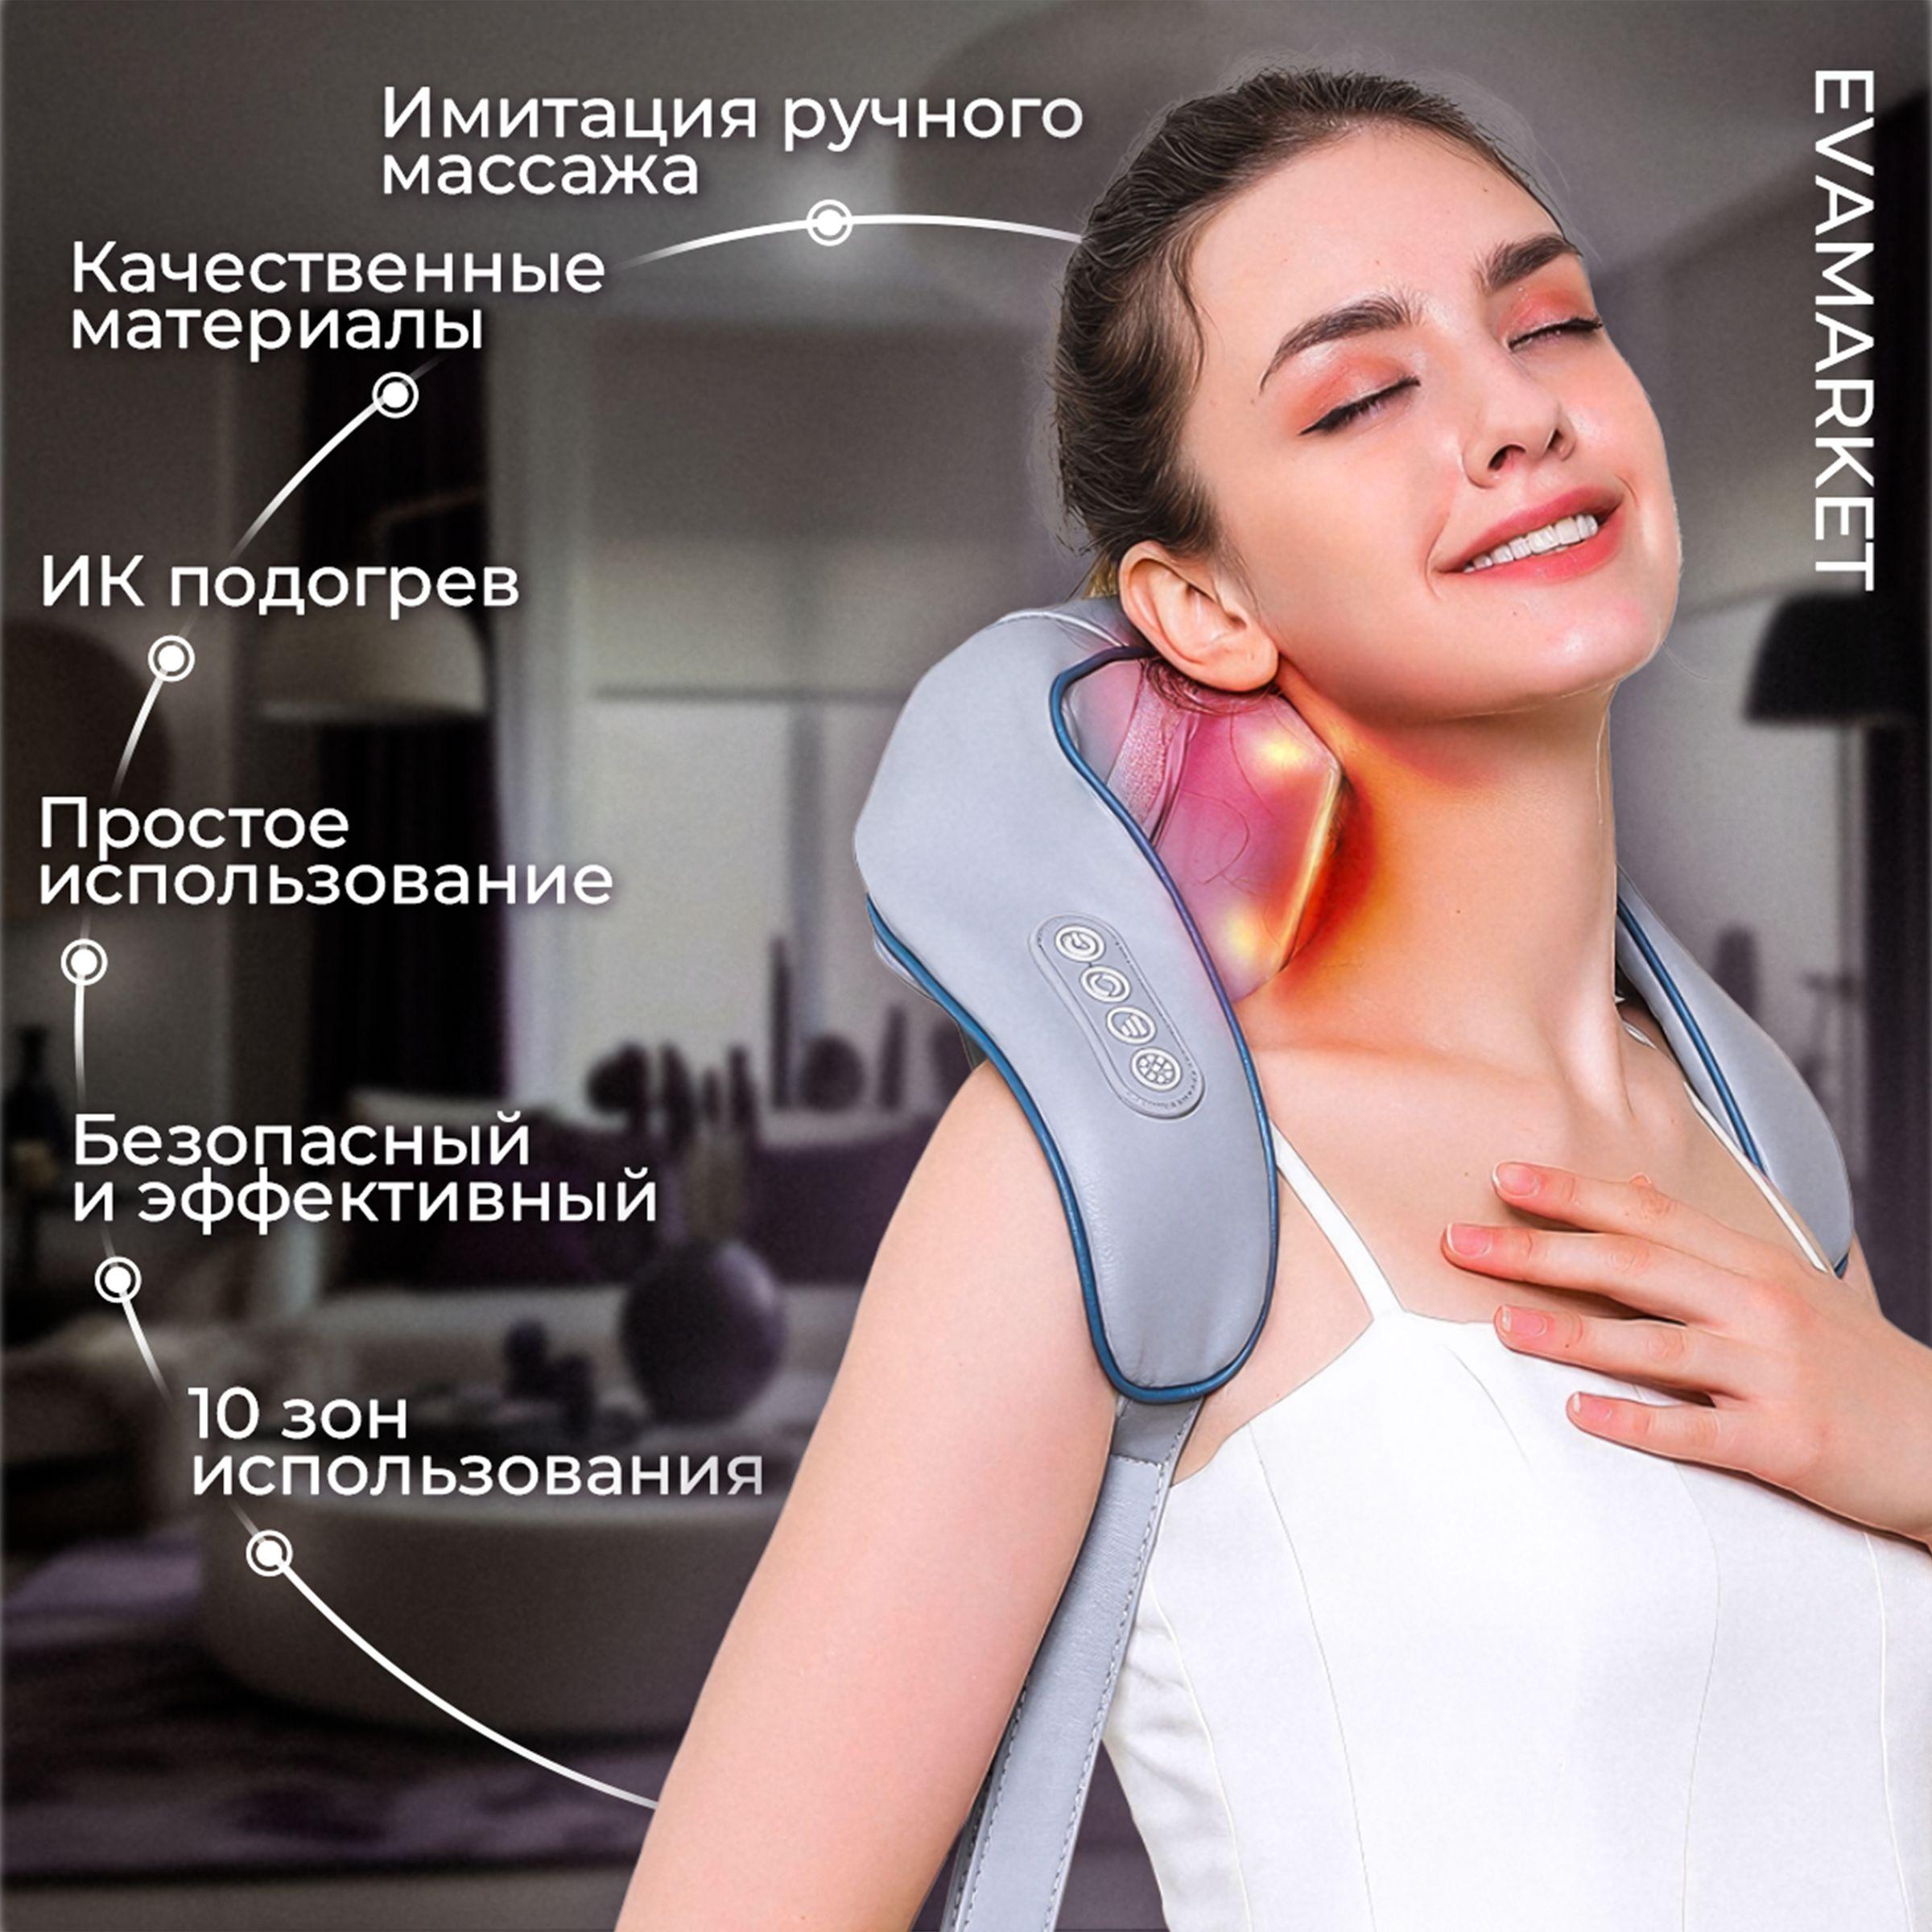 Премиум Massage Eva Master массажер для шеи и плеч, тела, спины, беспроводной, с ИК прогревом, многофункциональный.